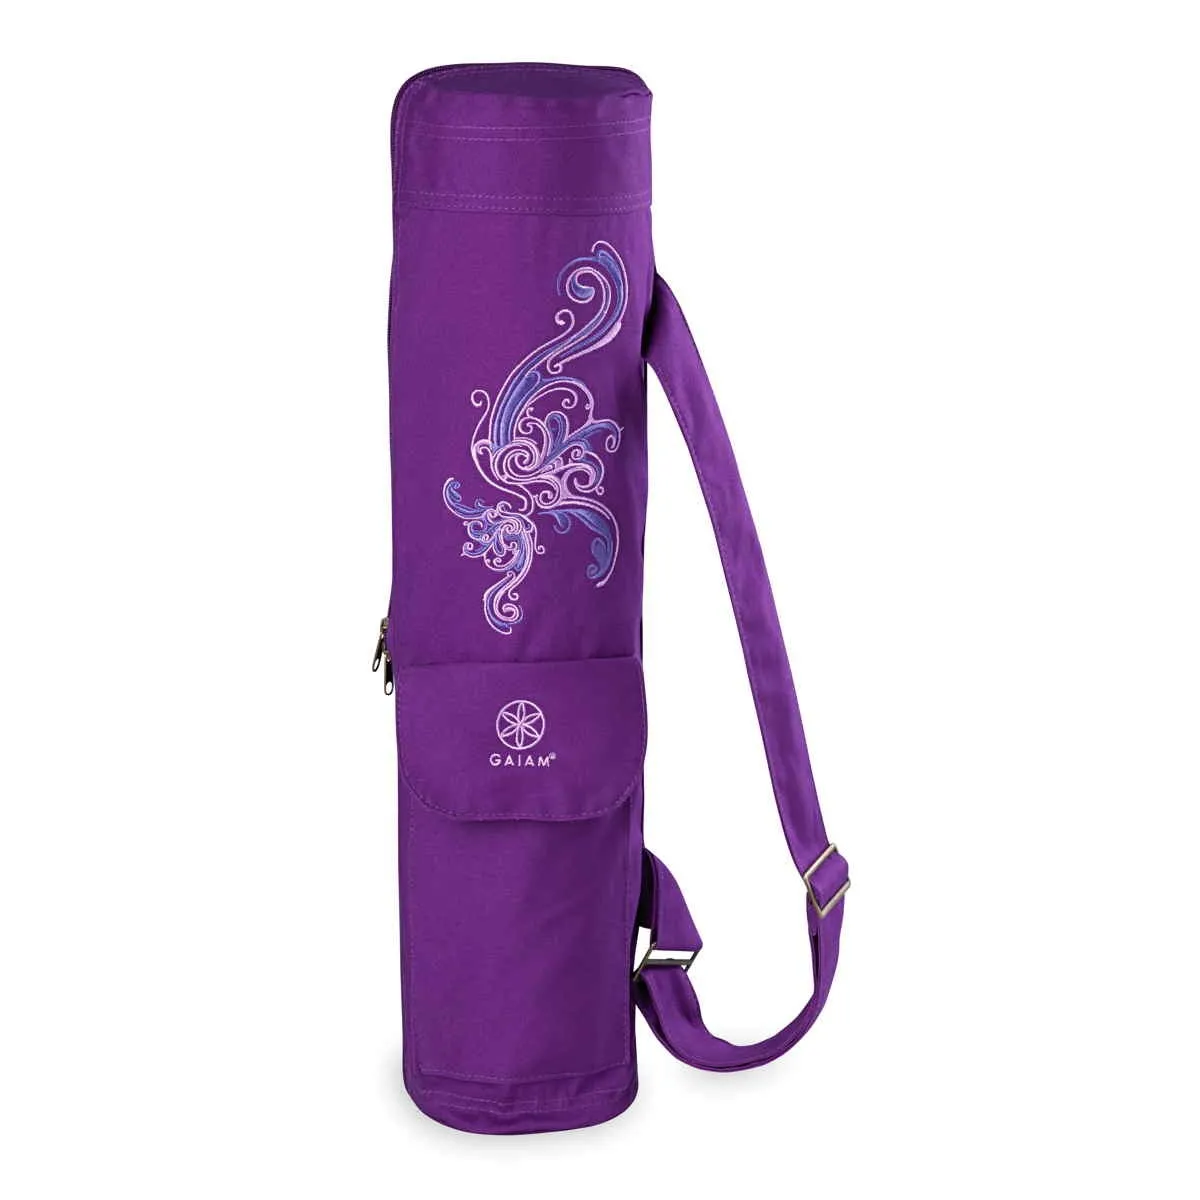 GAIAM bolsa para esterilla de yoga púrpura con estampado